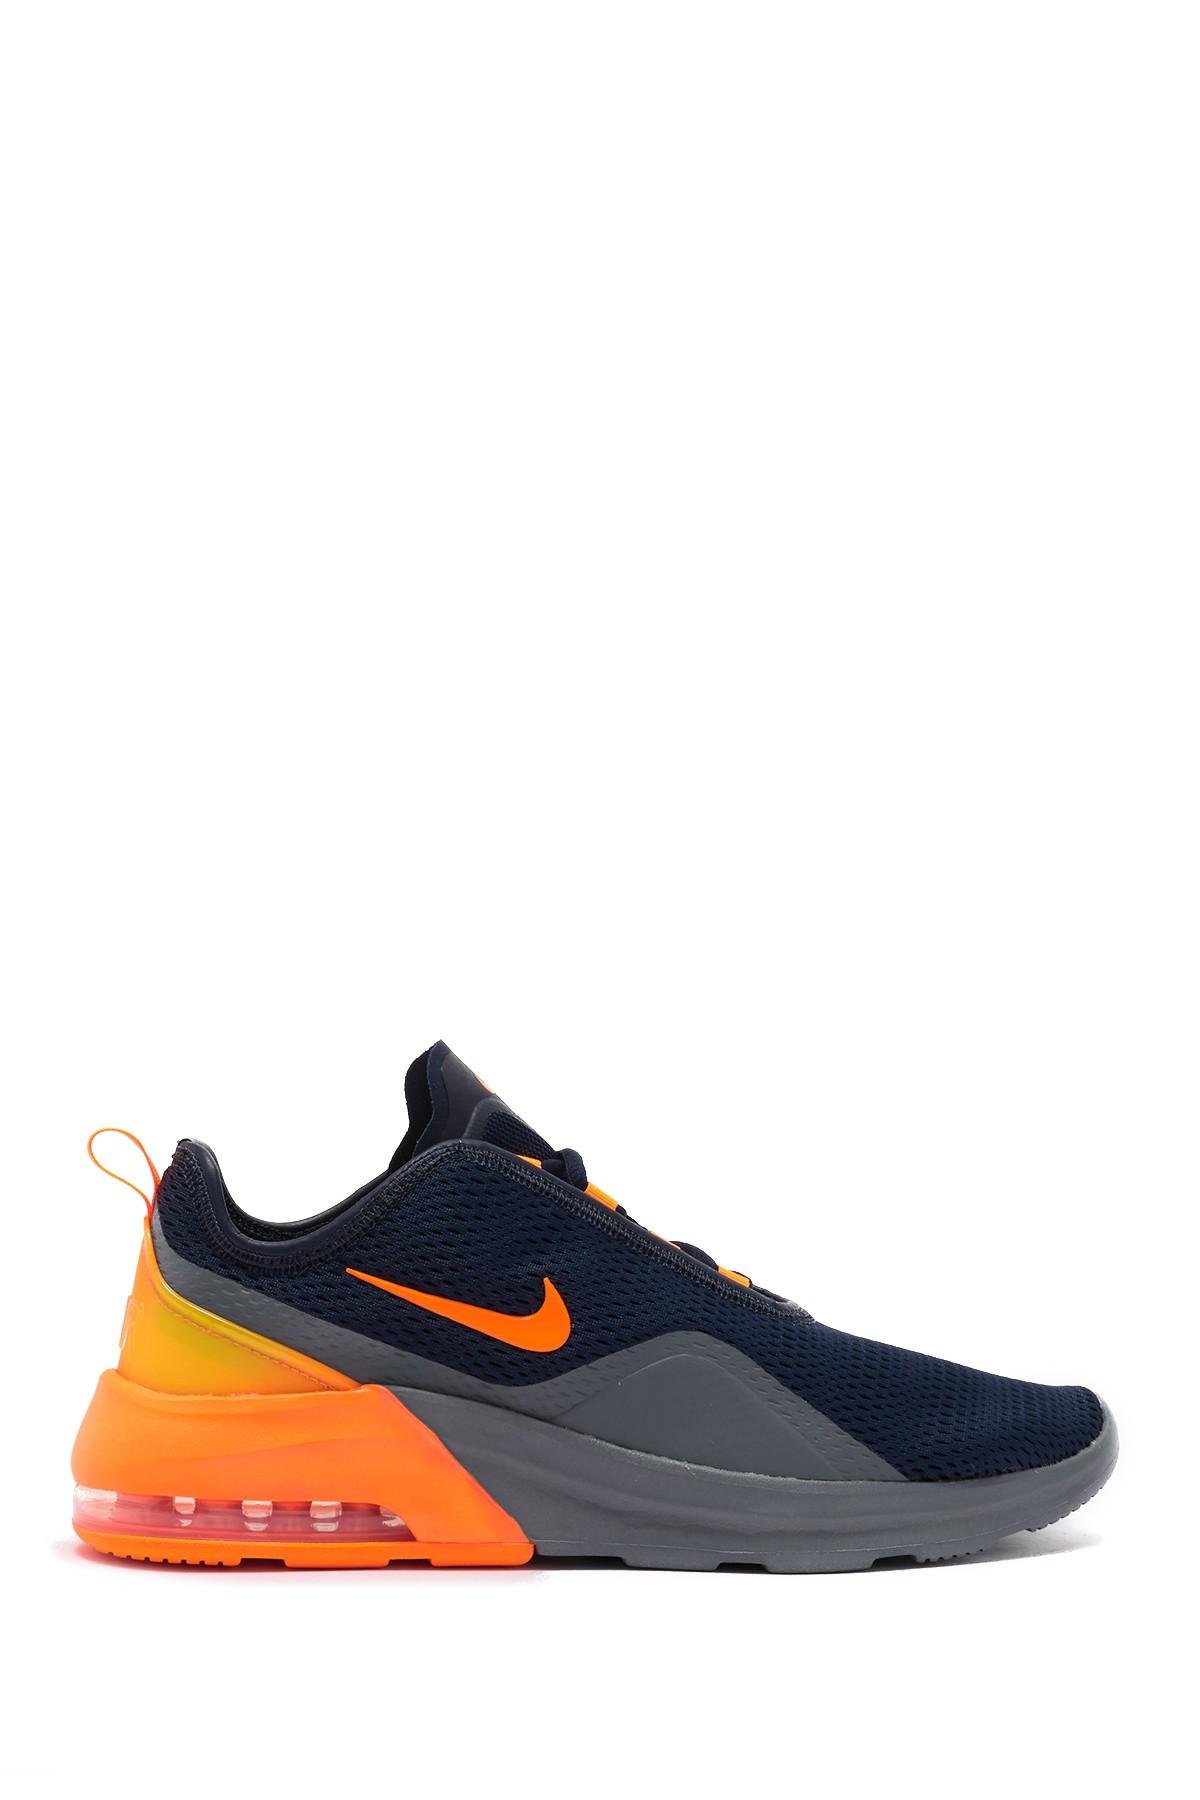 nike air max motion 2 men's sneakers orange